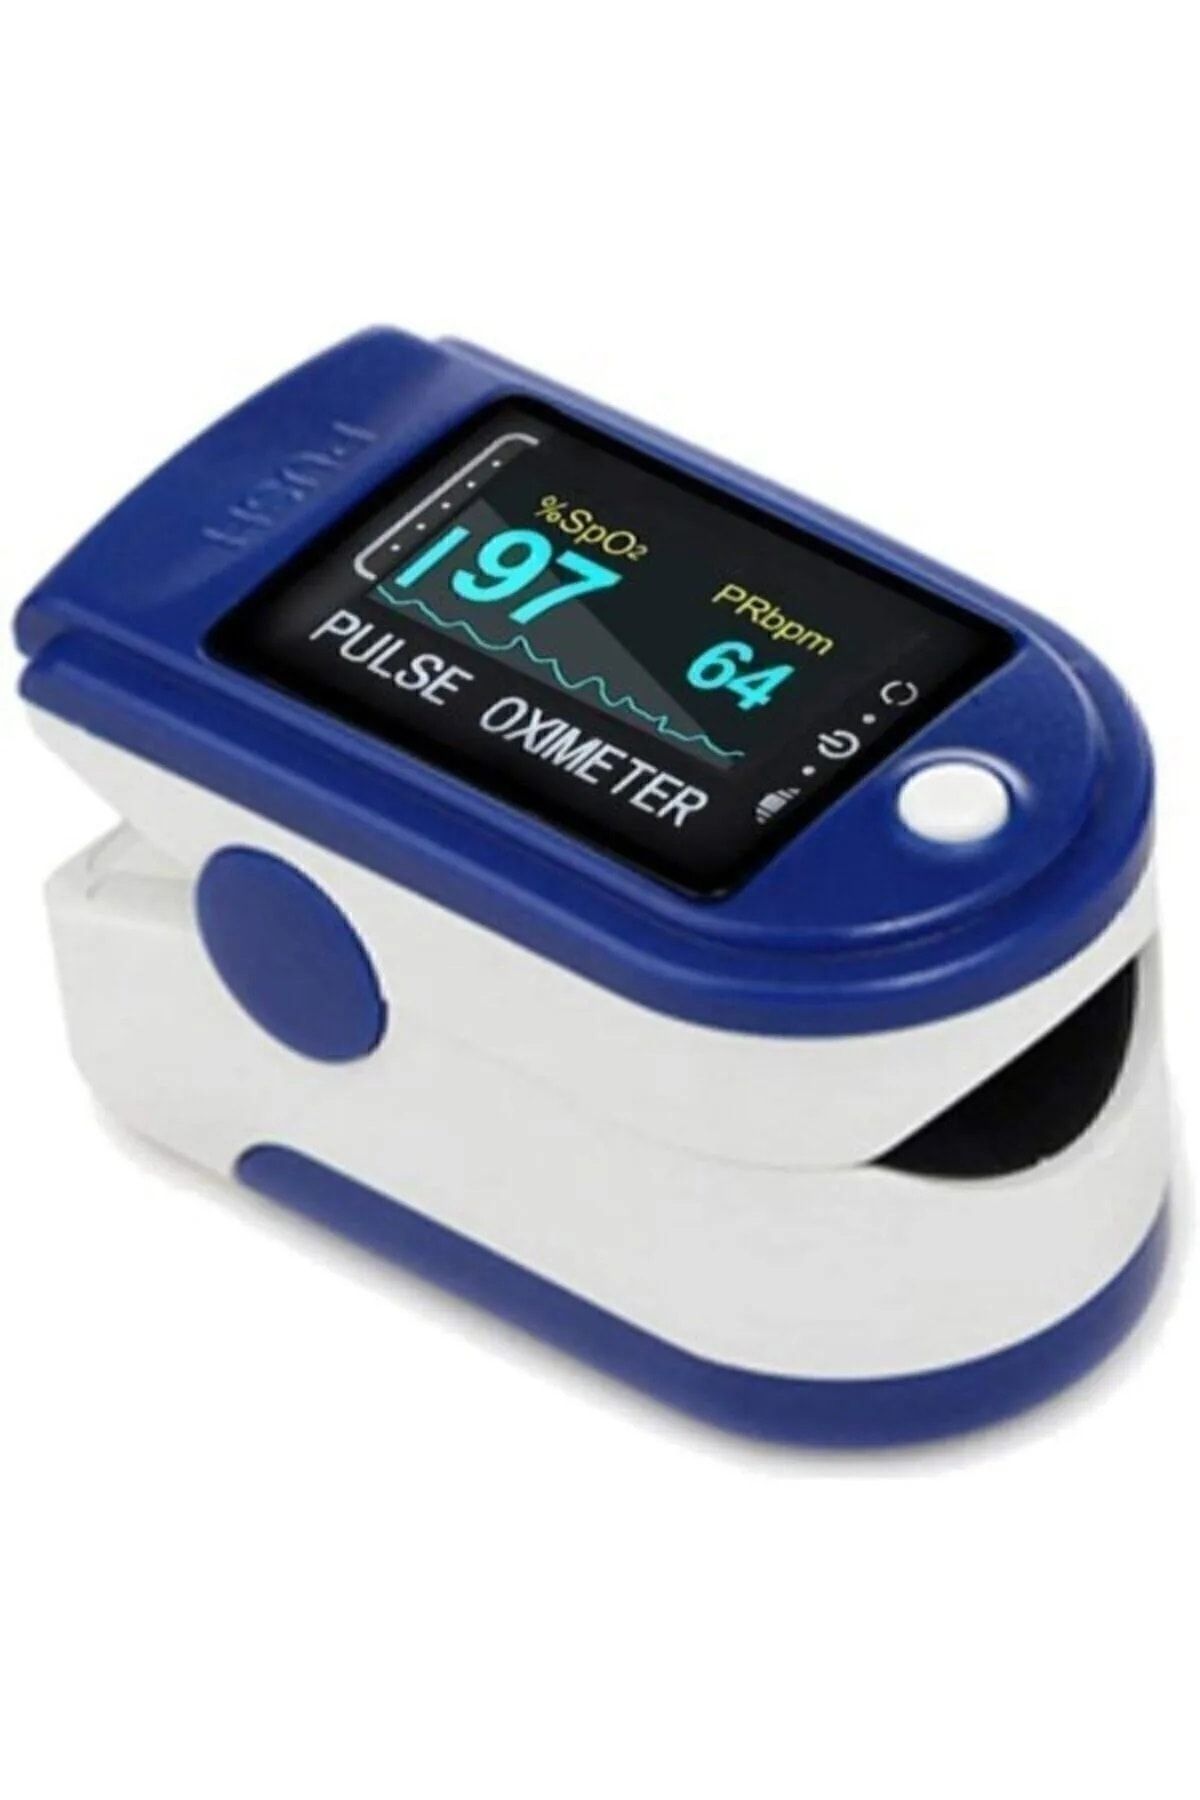 PULSE Parmak Oksimetre Spo2 Kalp Hızı Ritim Monitör Parmak Kan Oksijen Ölçme Cihazı